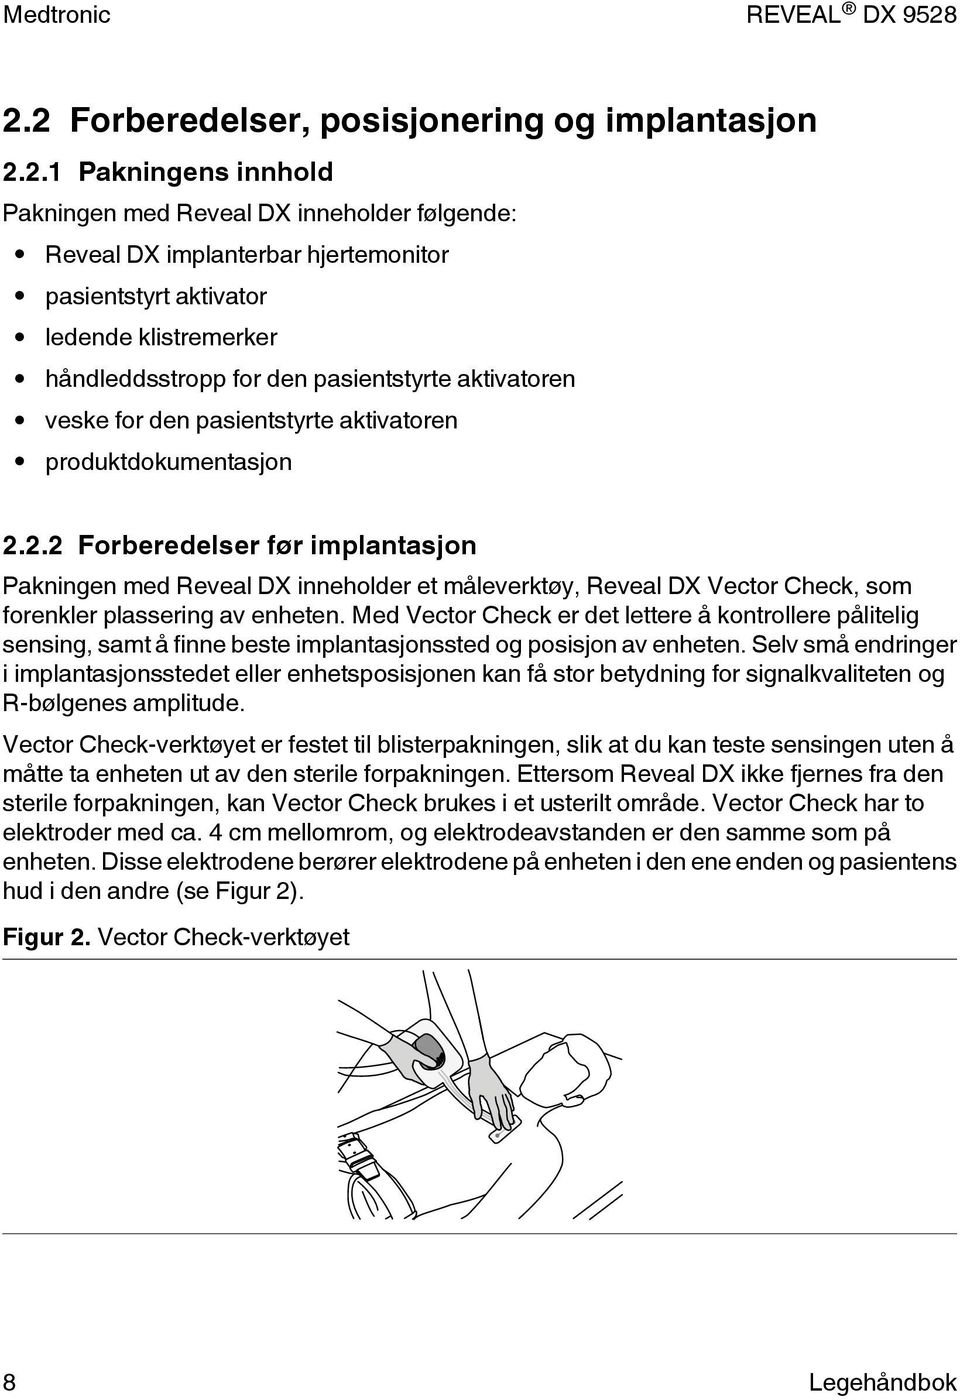 2.2 Forberedelser før implantasjon Pakningen med Reveal DX inneholder et måleverktøy, Reveal DX Vector Check, som forenkler plassering av enheten.